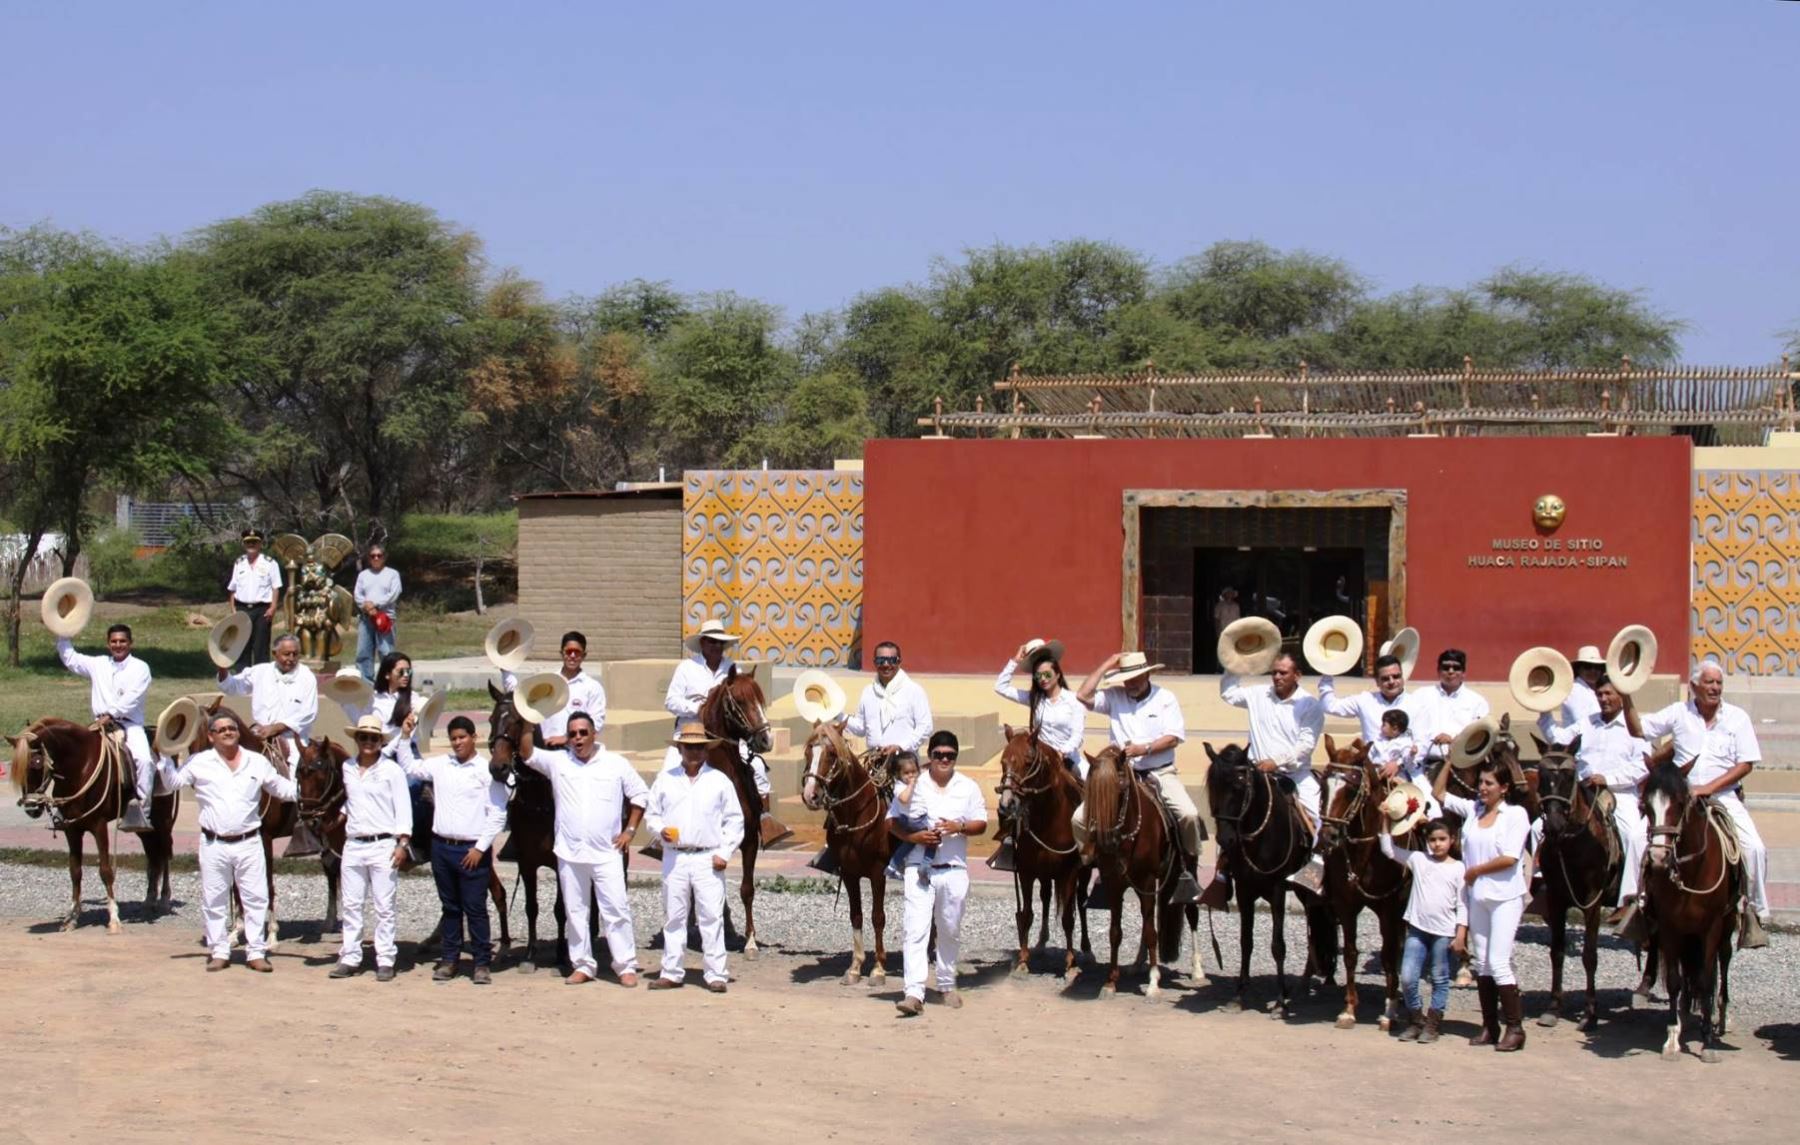 Habrá exhibición de caballos de paso peruano por el aniversario del descubrimiento del Señor de Sipán, en Lambayeque. ANDINA